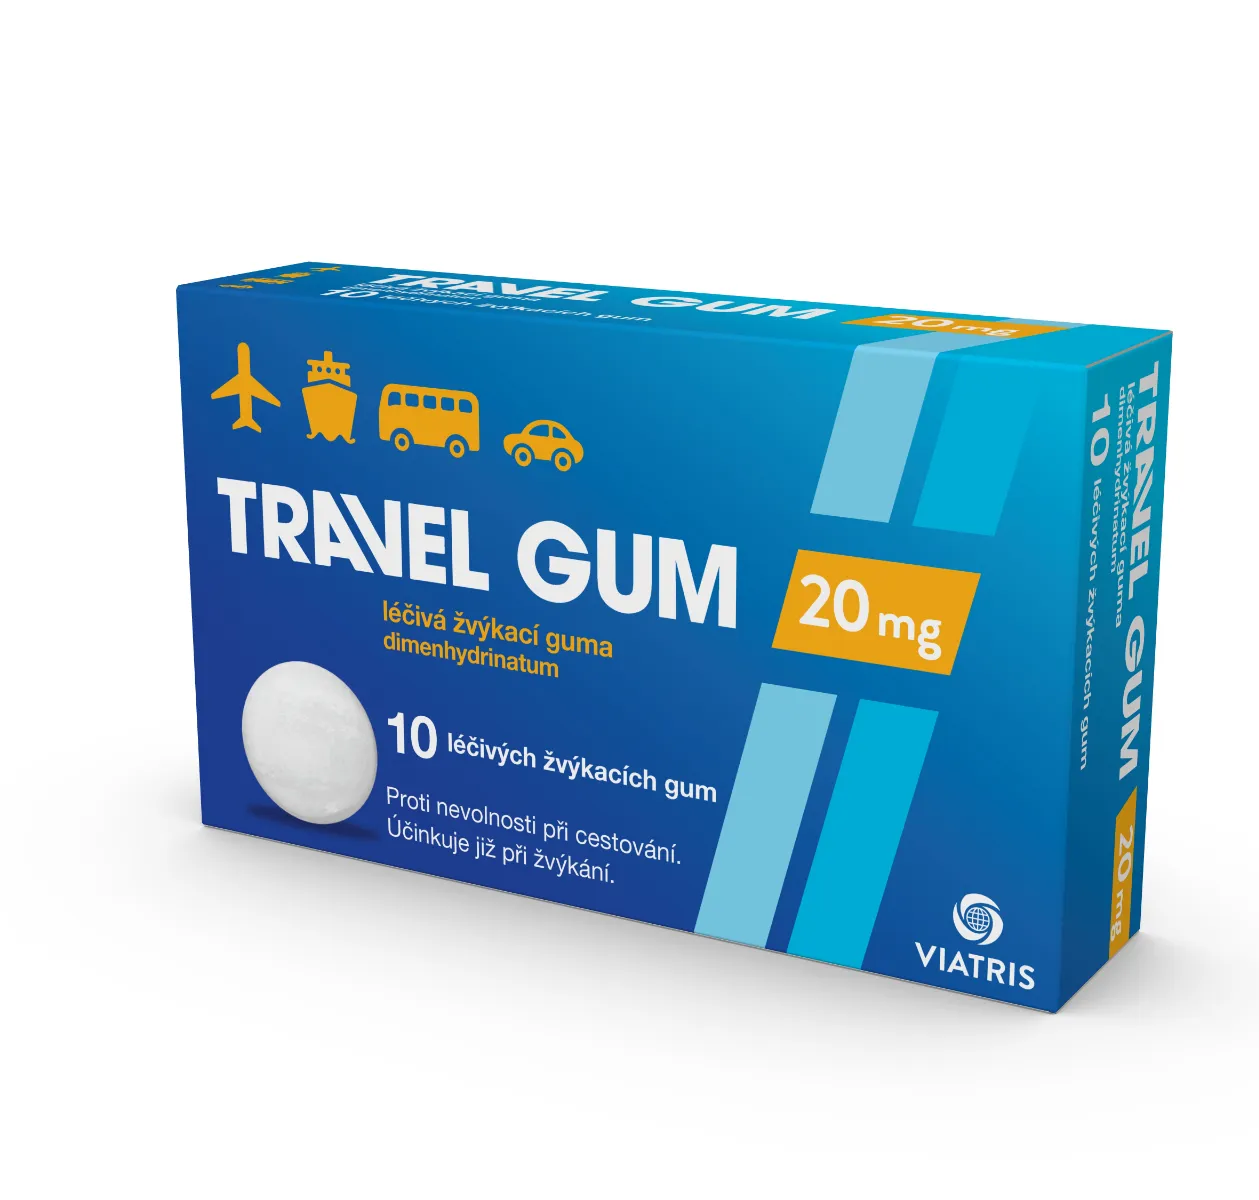 Travel-gum 20 mg 10 žvýkaček